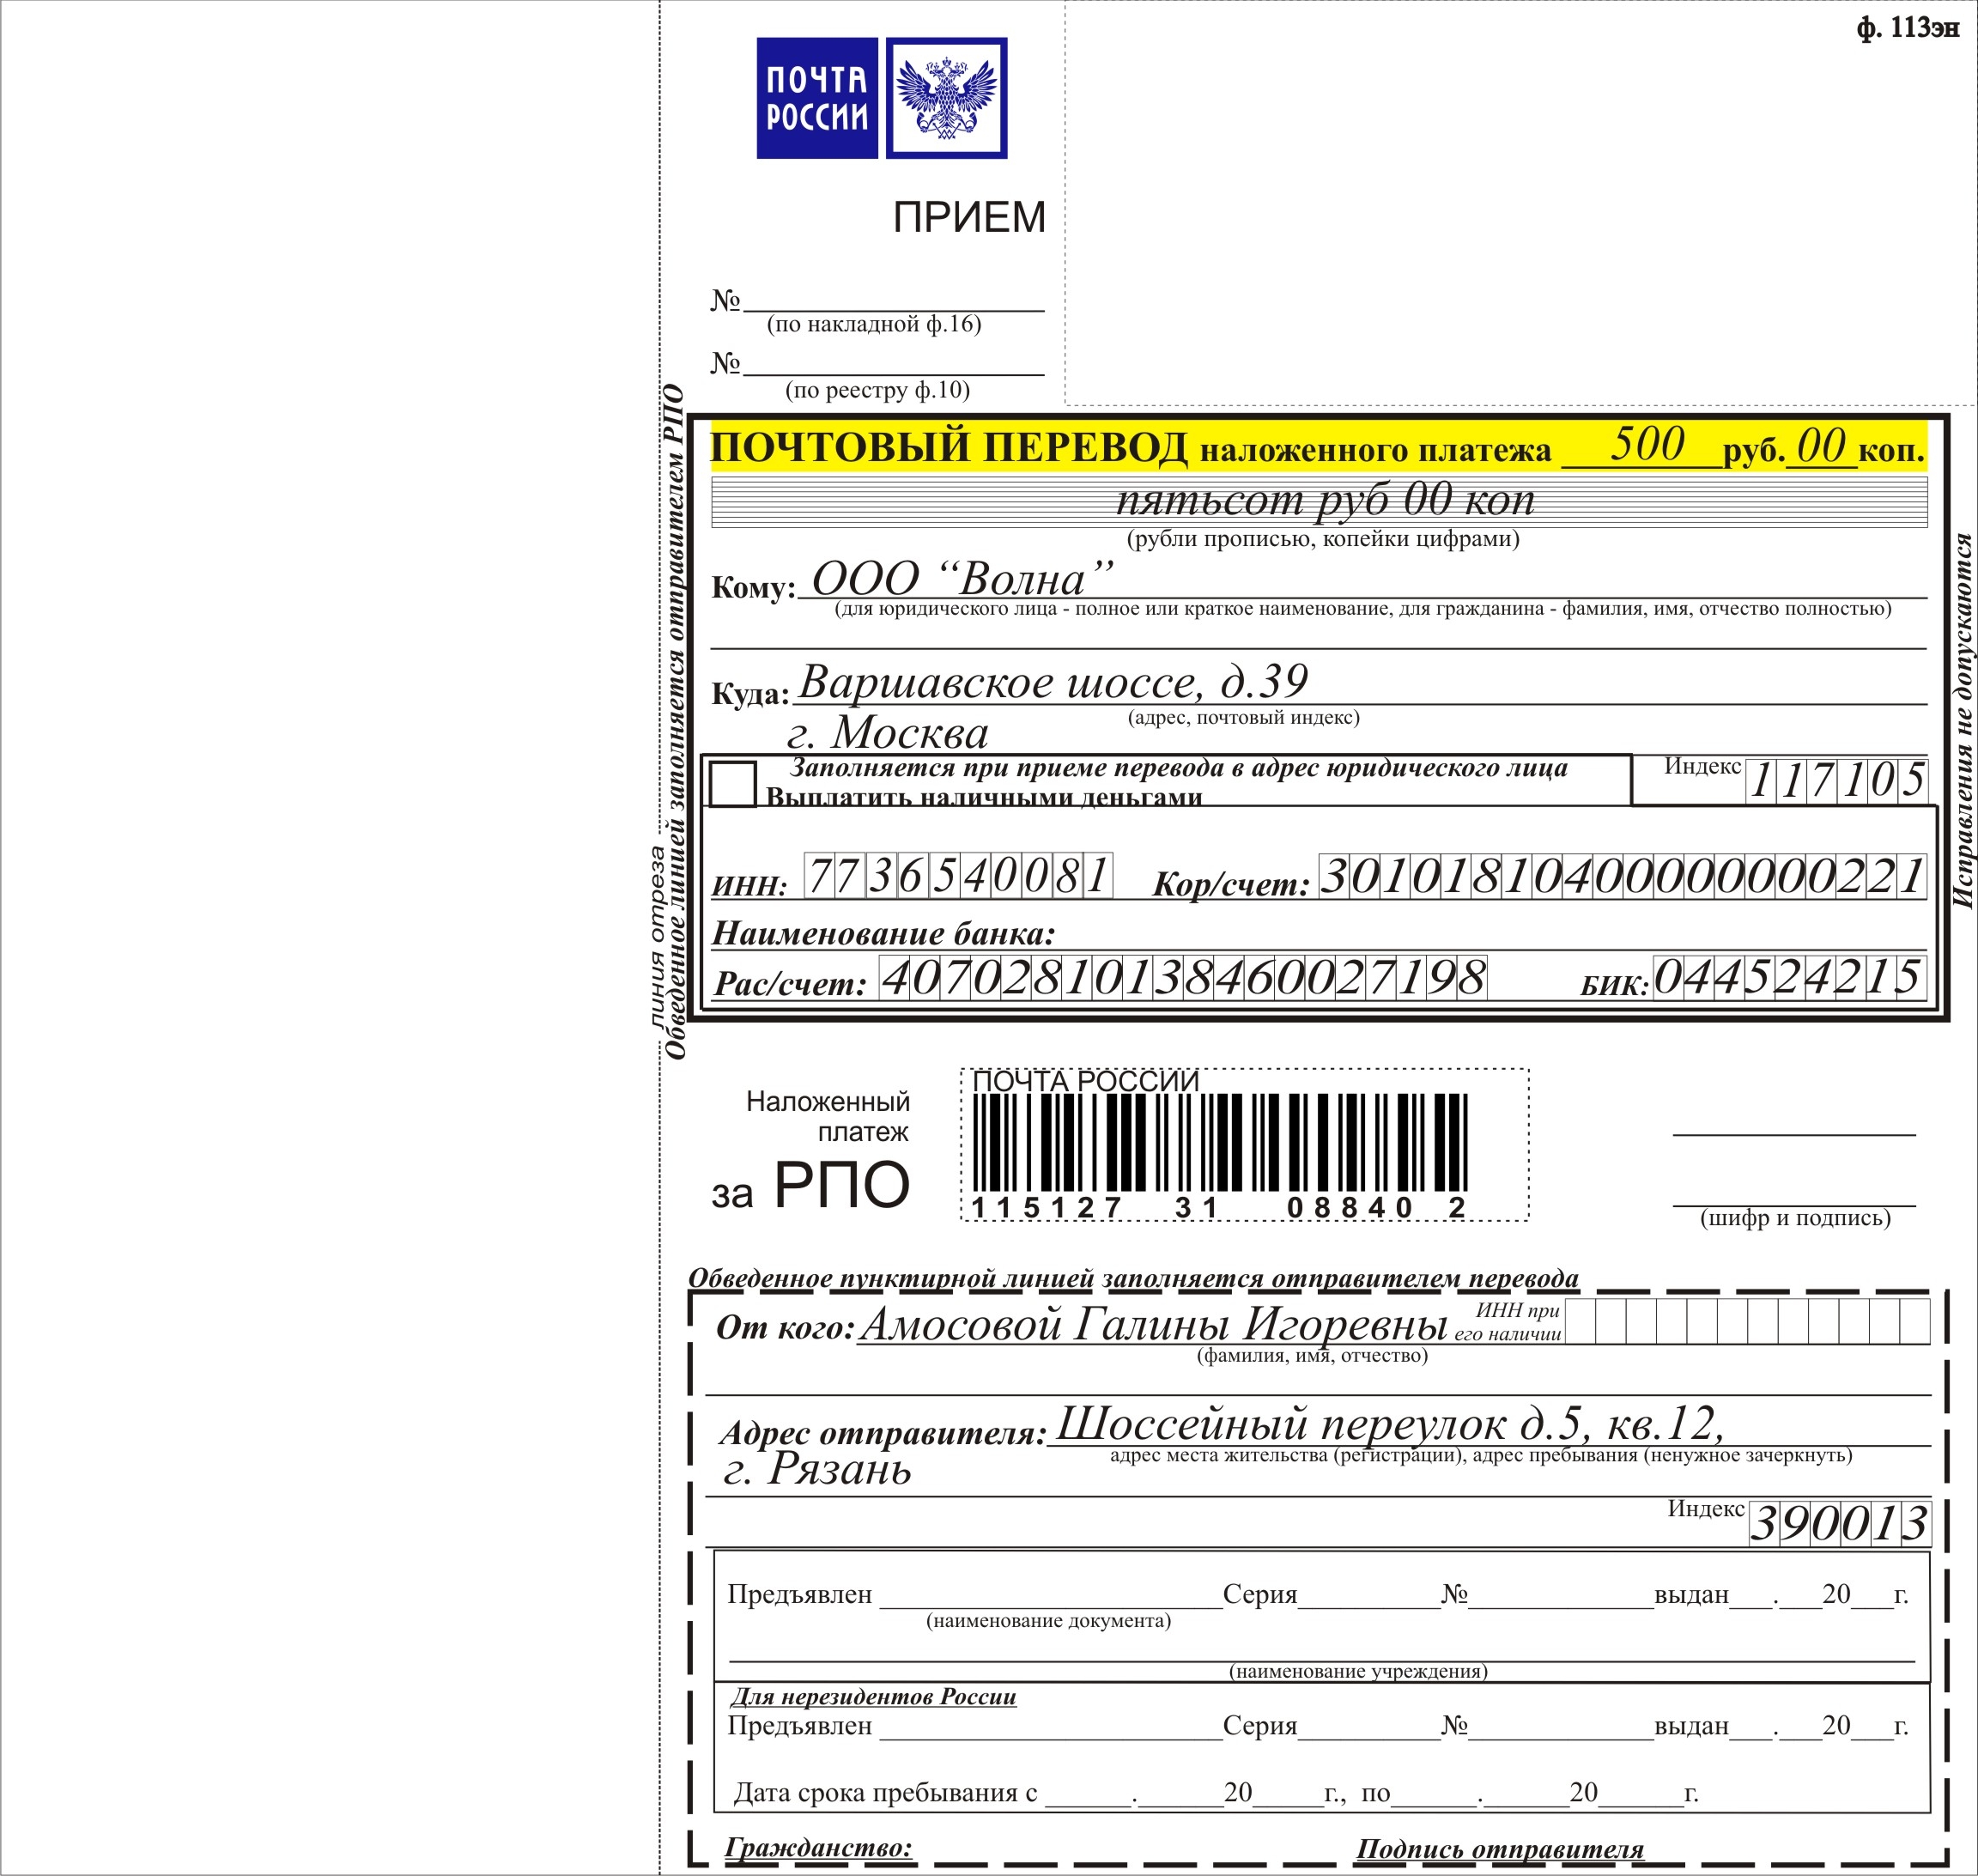 Оплатить доставку почта россии. Наложенный платёж форма ф112эп. Пример заполнения отправления посылки с наложенным платежом. Бланк наложенного платежа форма. Наложенный платеж форма ф113.